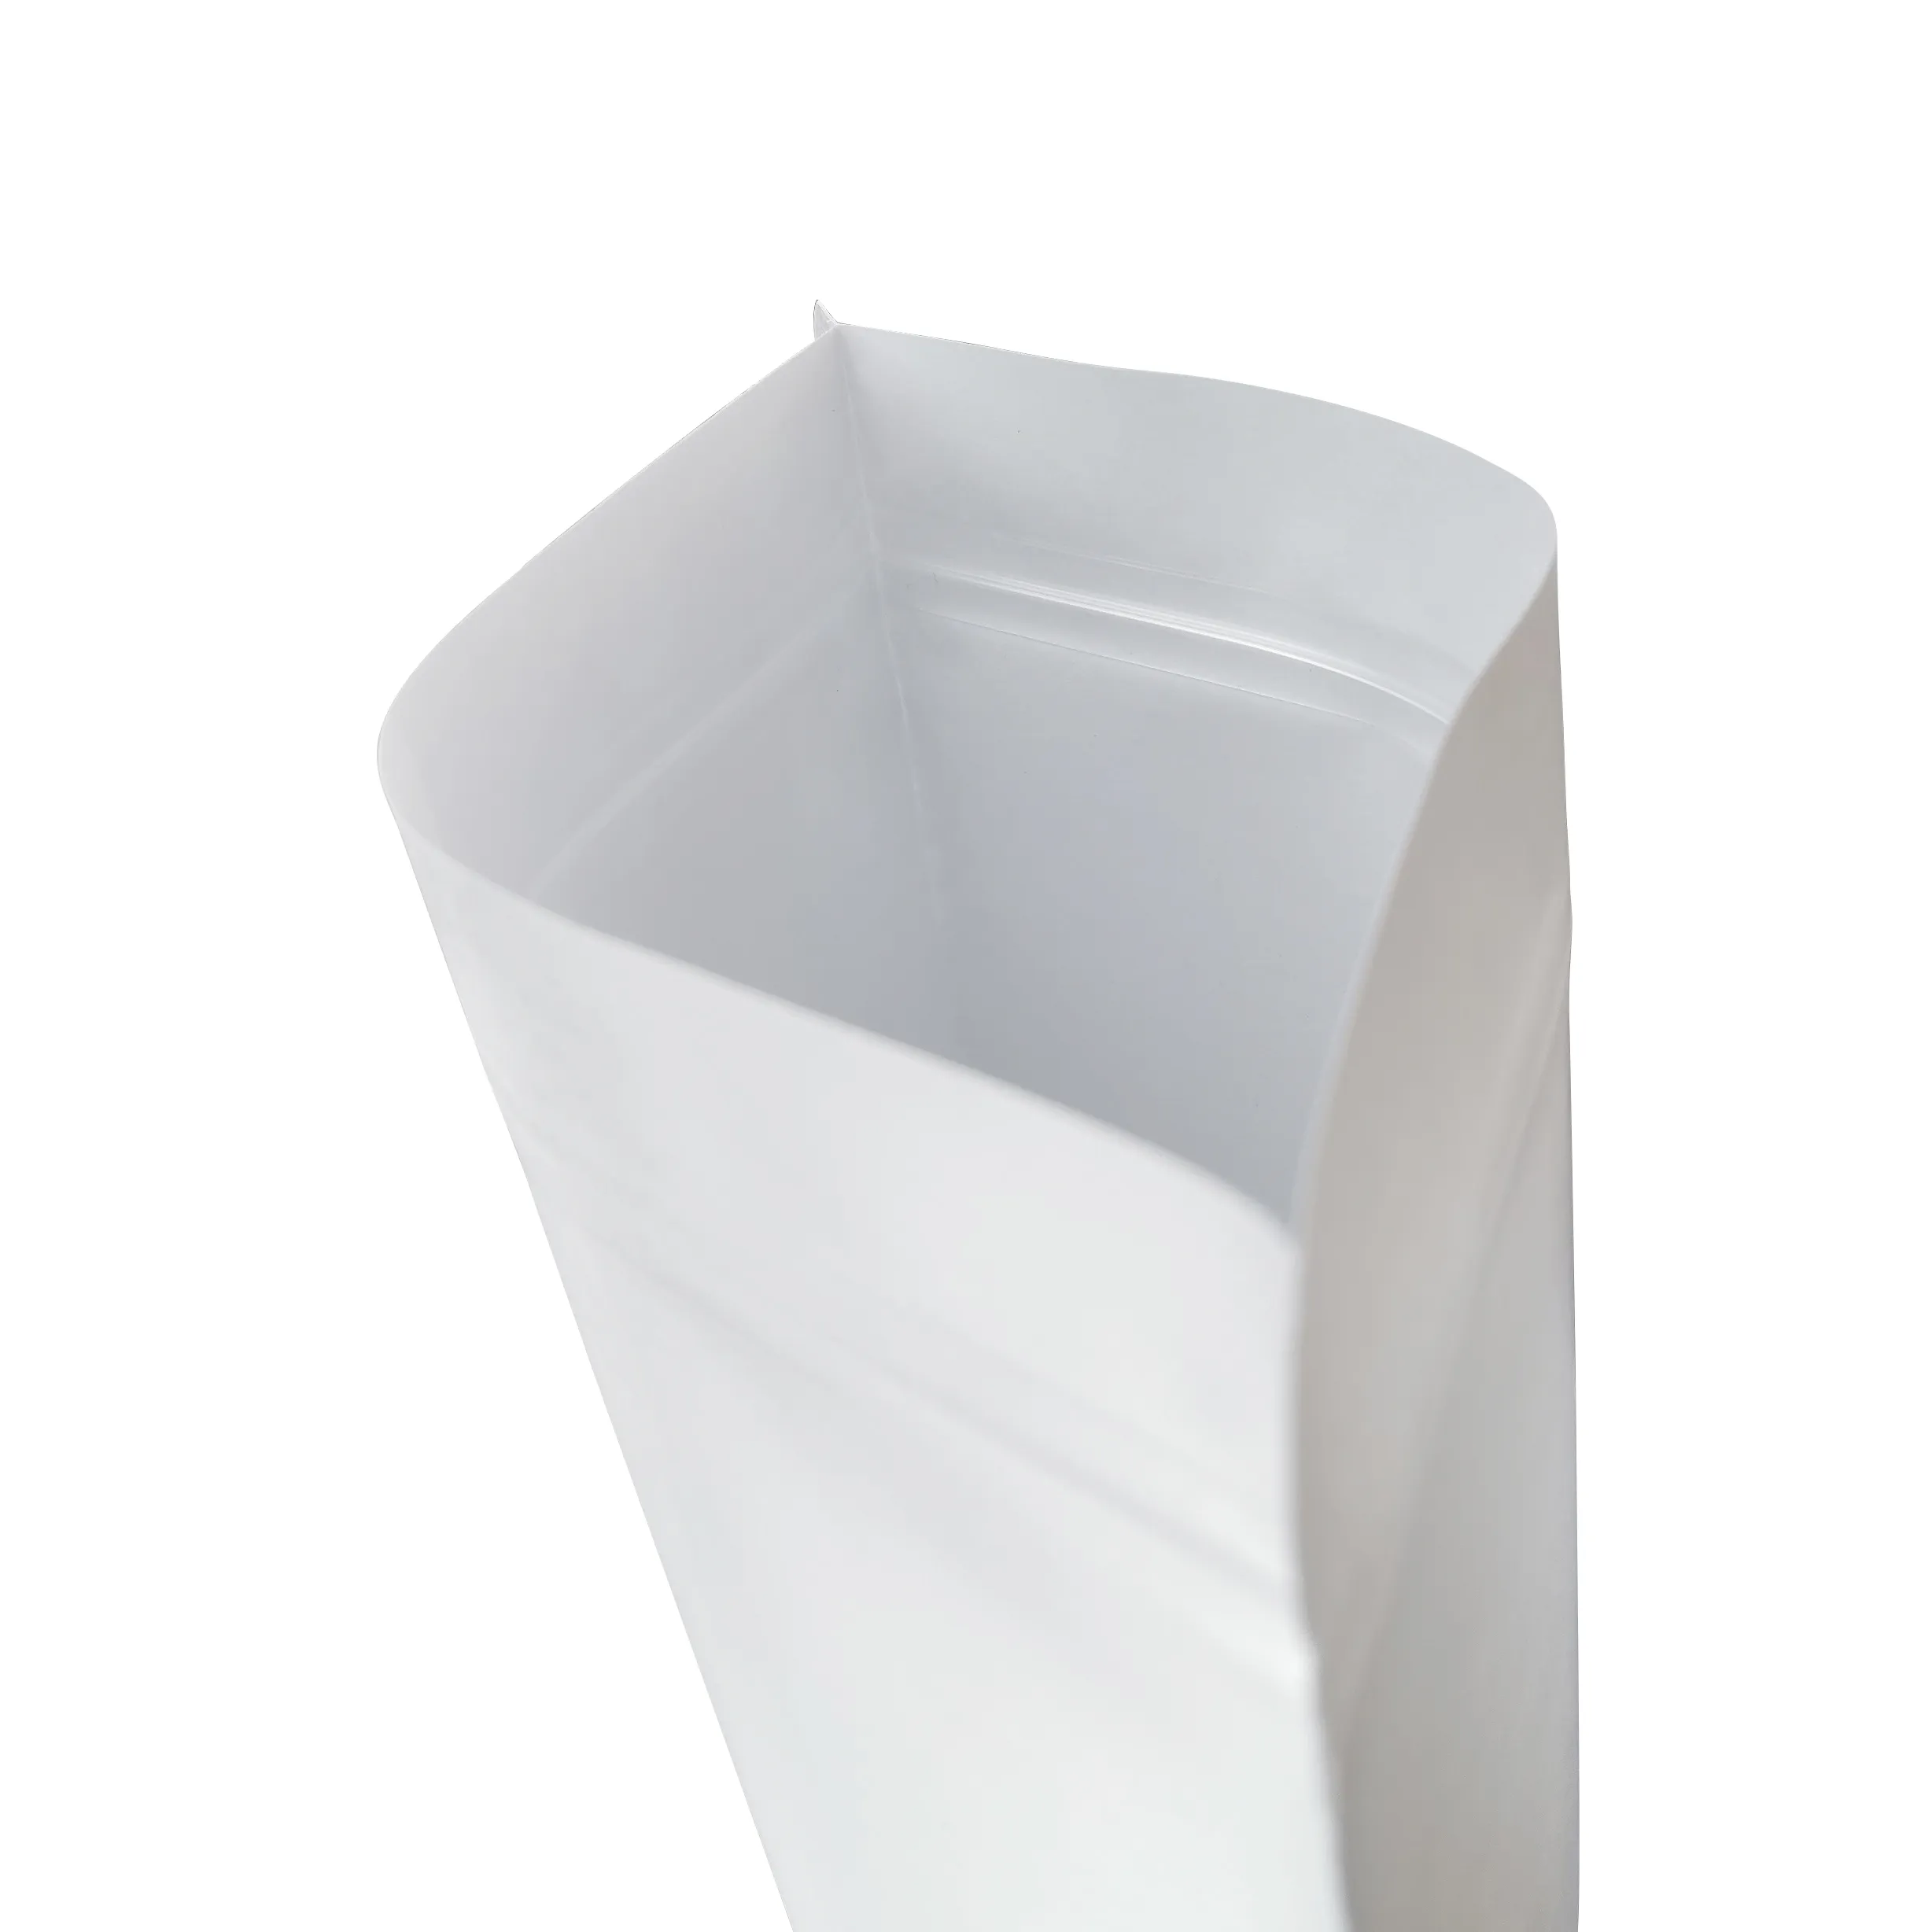 Vorrätig kundenspezifischer weißer Standbeutel Kraftpapiertüten mit Fenster für Nuss-, Samen- und Schokoladenahrung Verpackung